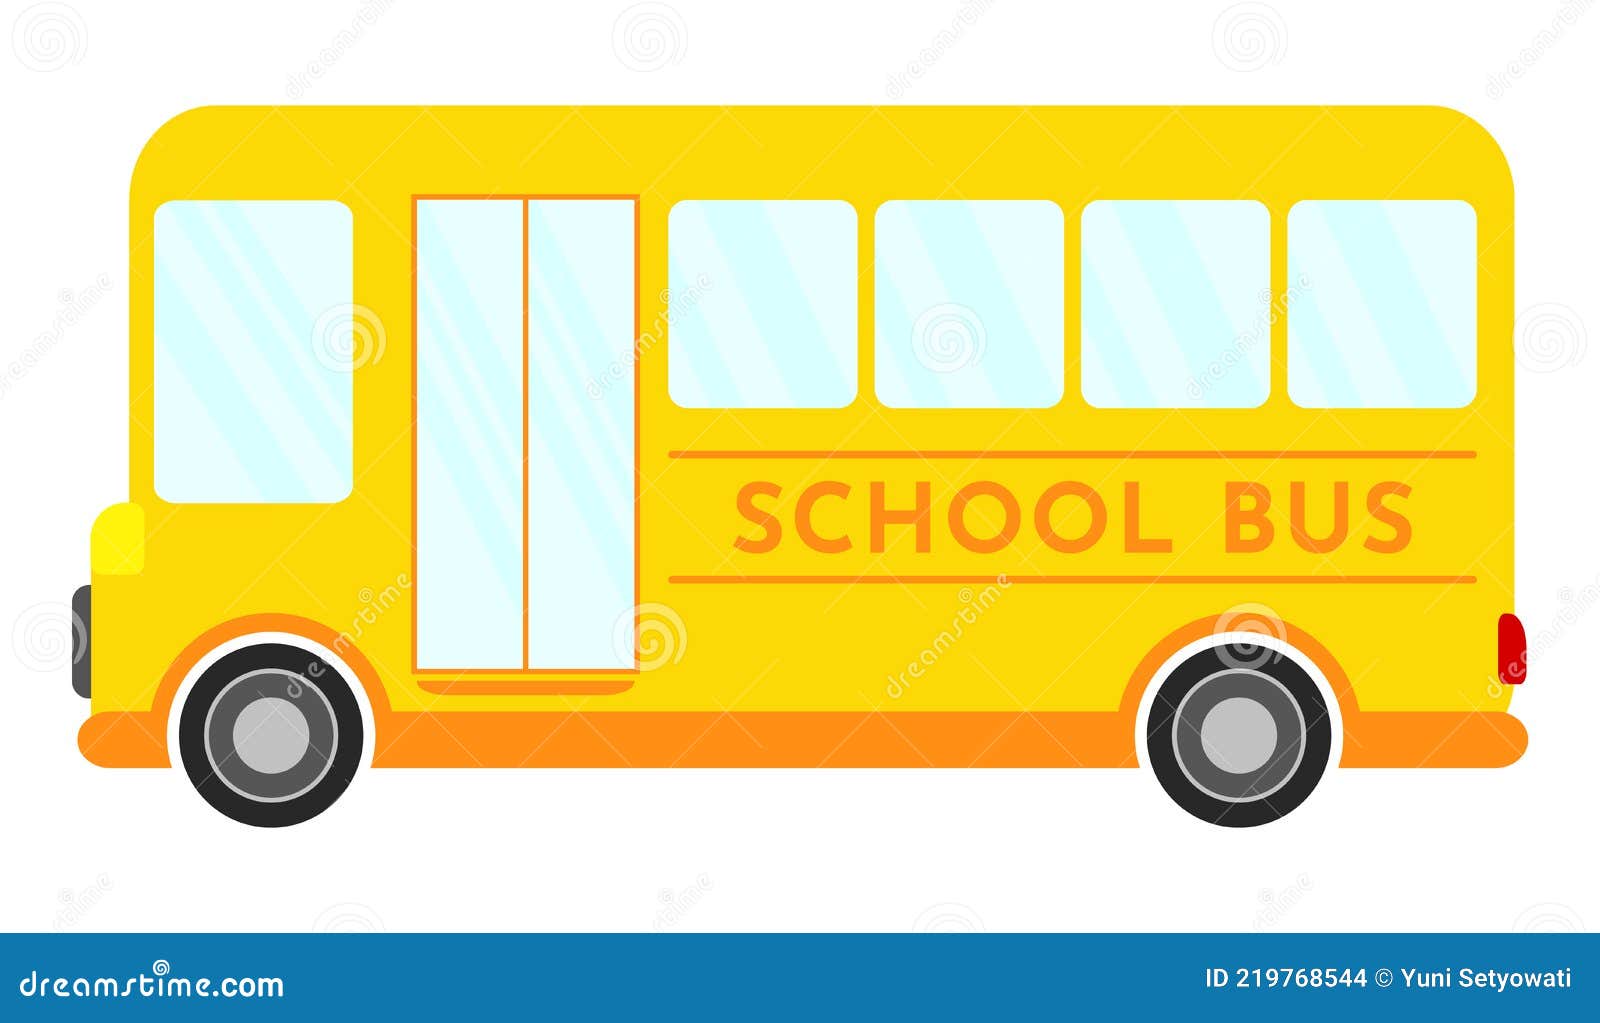 Мультик - Раскраска. Учим Цвета - Городской транспорт - Автобус, Троллейбус, Маршрутка